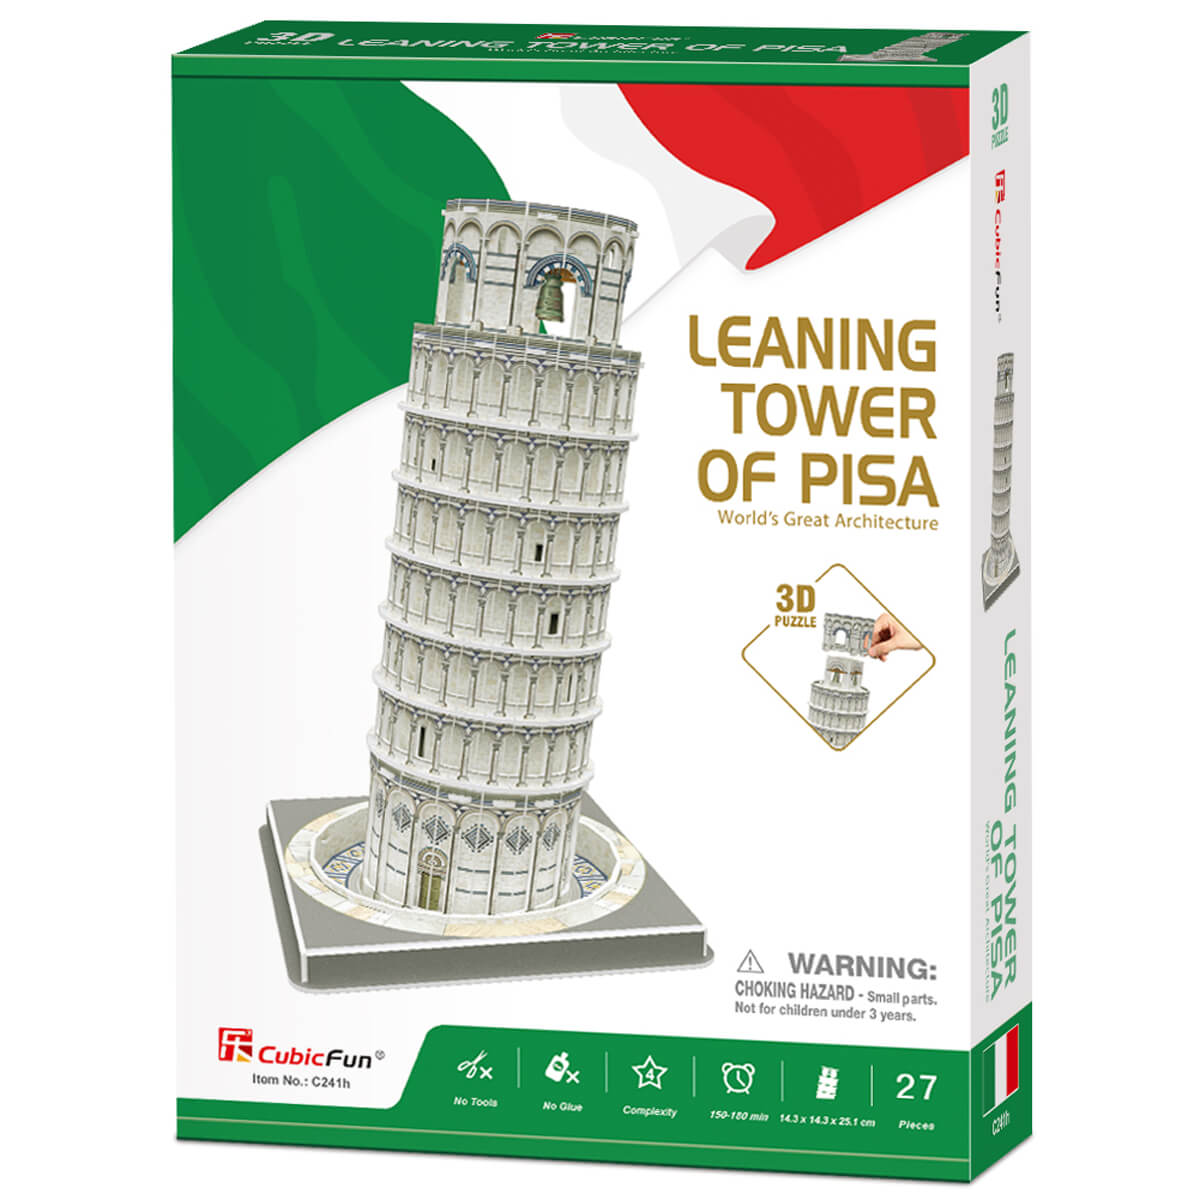 ΠΑΙΔΙ | Παιχνίδια | Επιτραπέζια - Παζλ - Βιβλία - Χειροτεχνίες | PUZZLES - BRAINTEASERS Leaning Tower Of Pisa